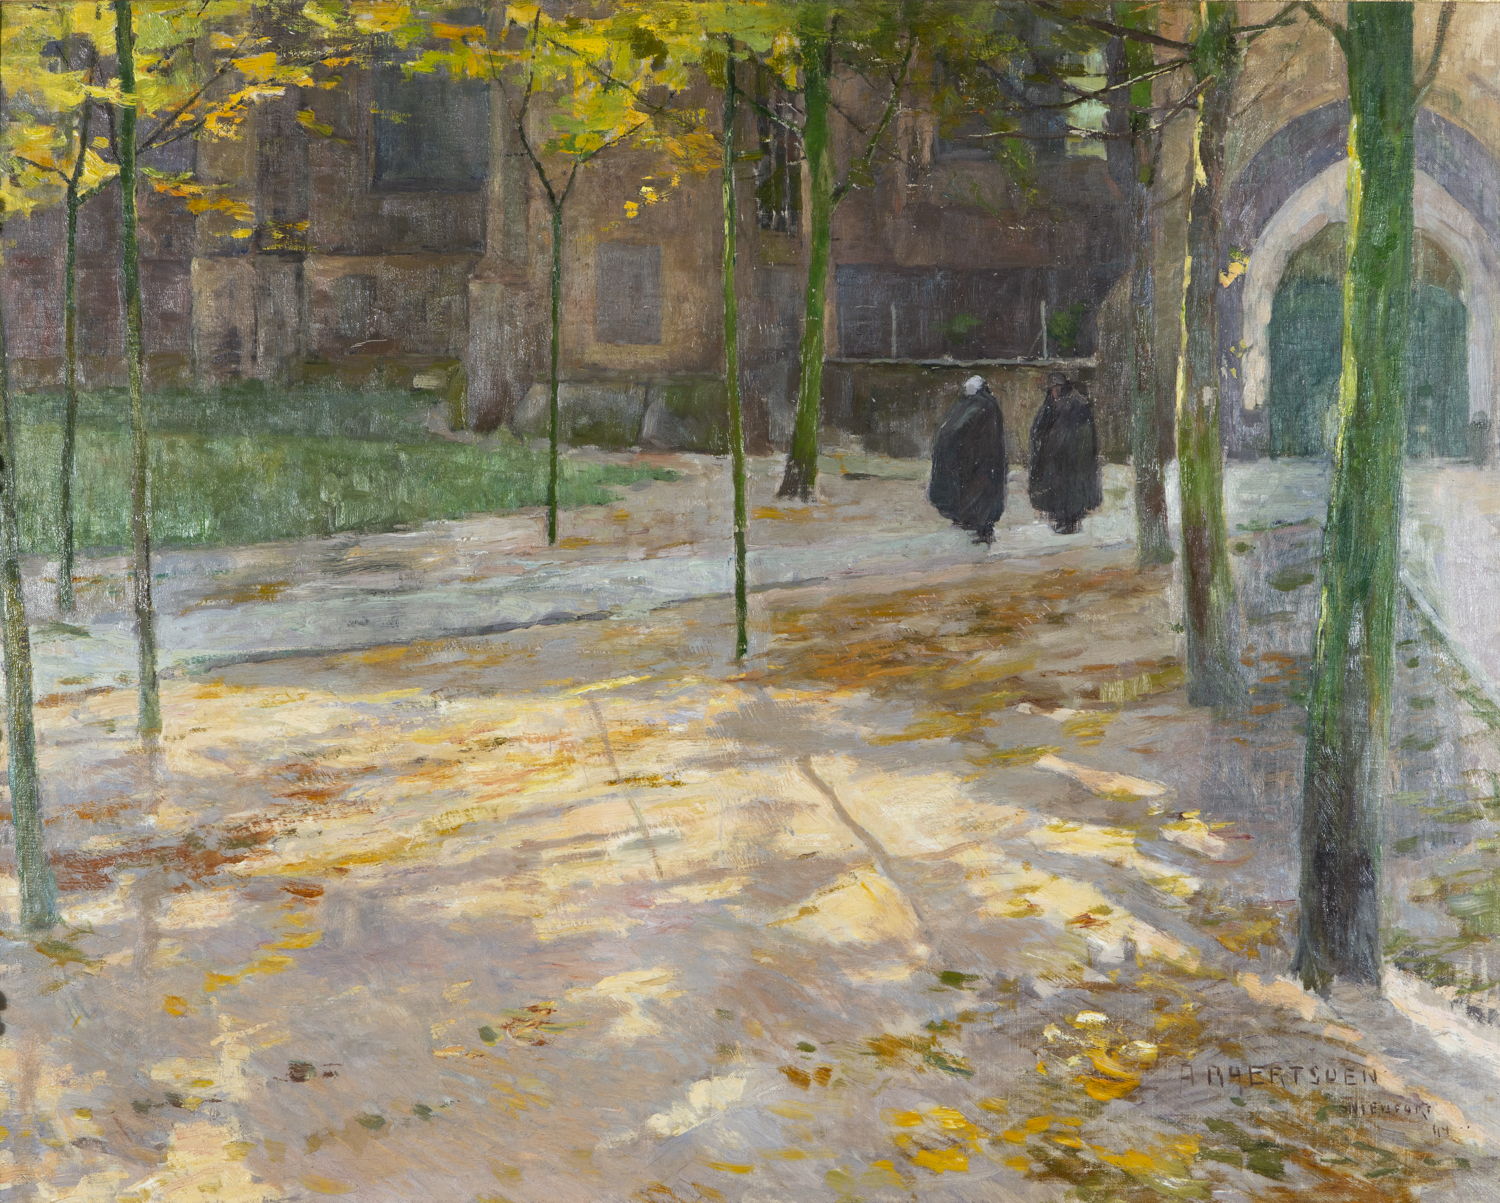 Albert Baertsoen (Gent, 1866 – Gent, 1922) Voor de kerk, in Vlaanderen (herfst), 1894. Olieverf op doek. Privéverzameling